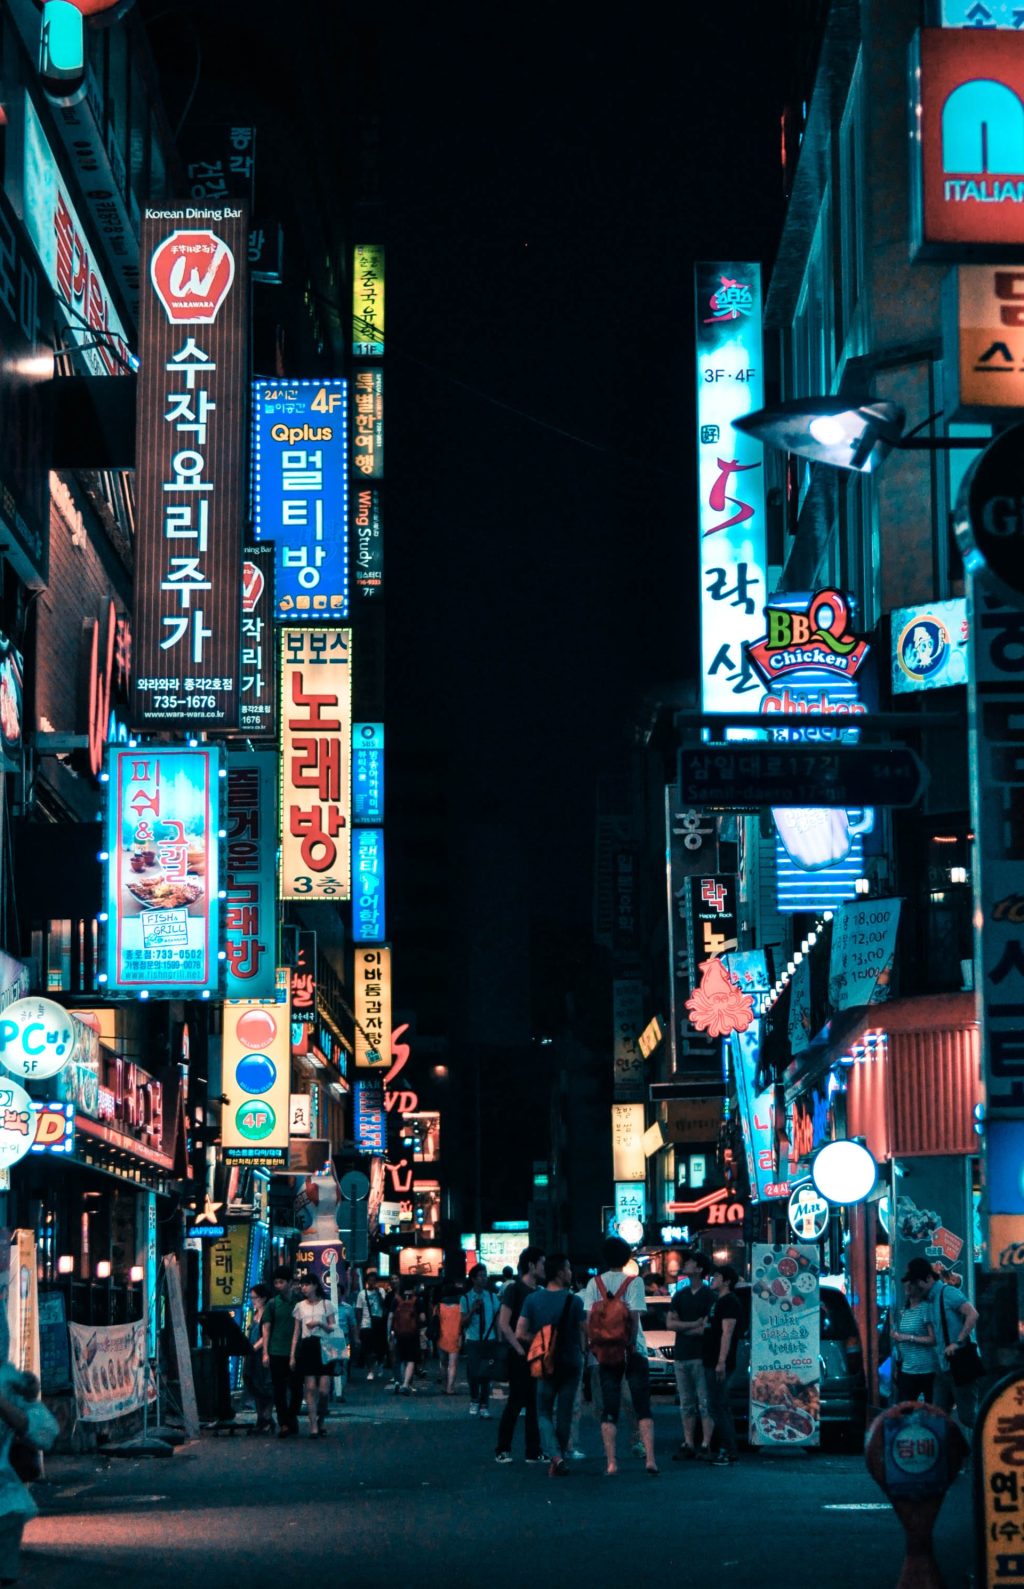 Colorful street in Seoul, Korea